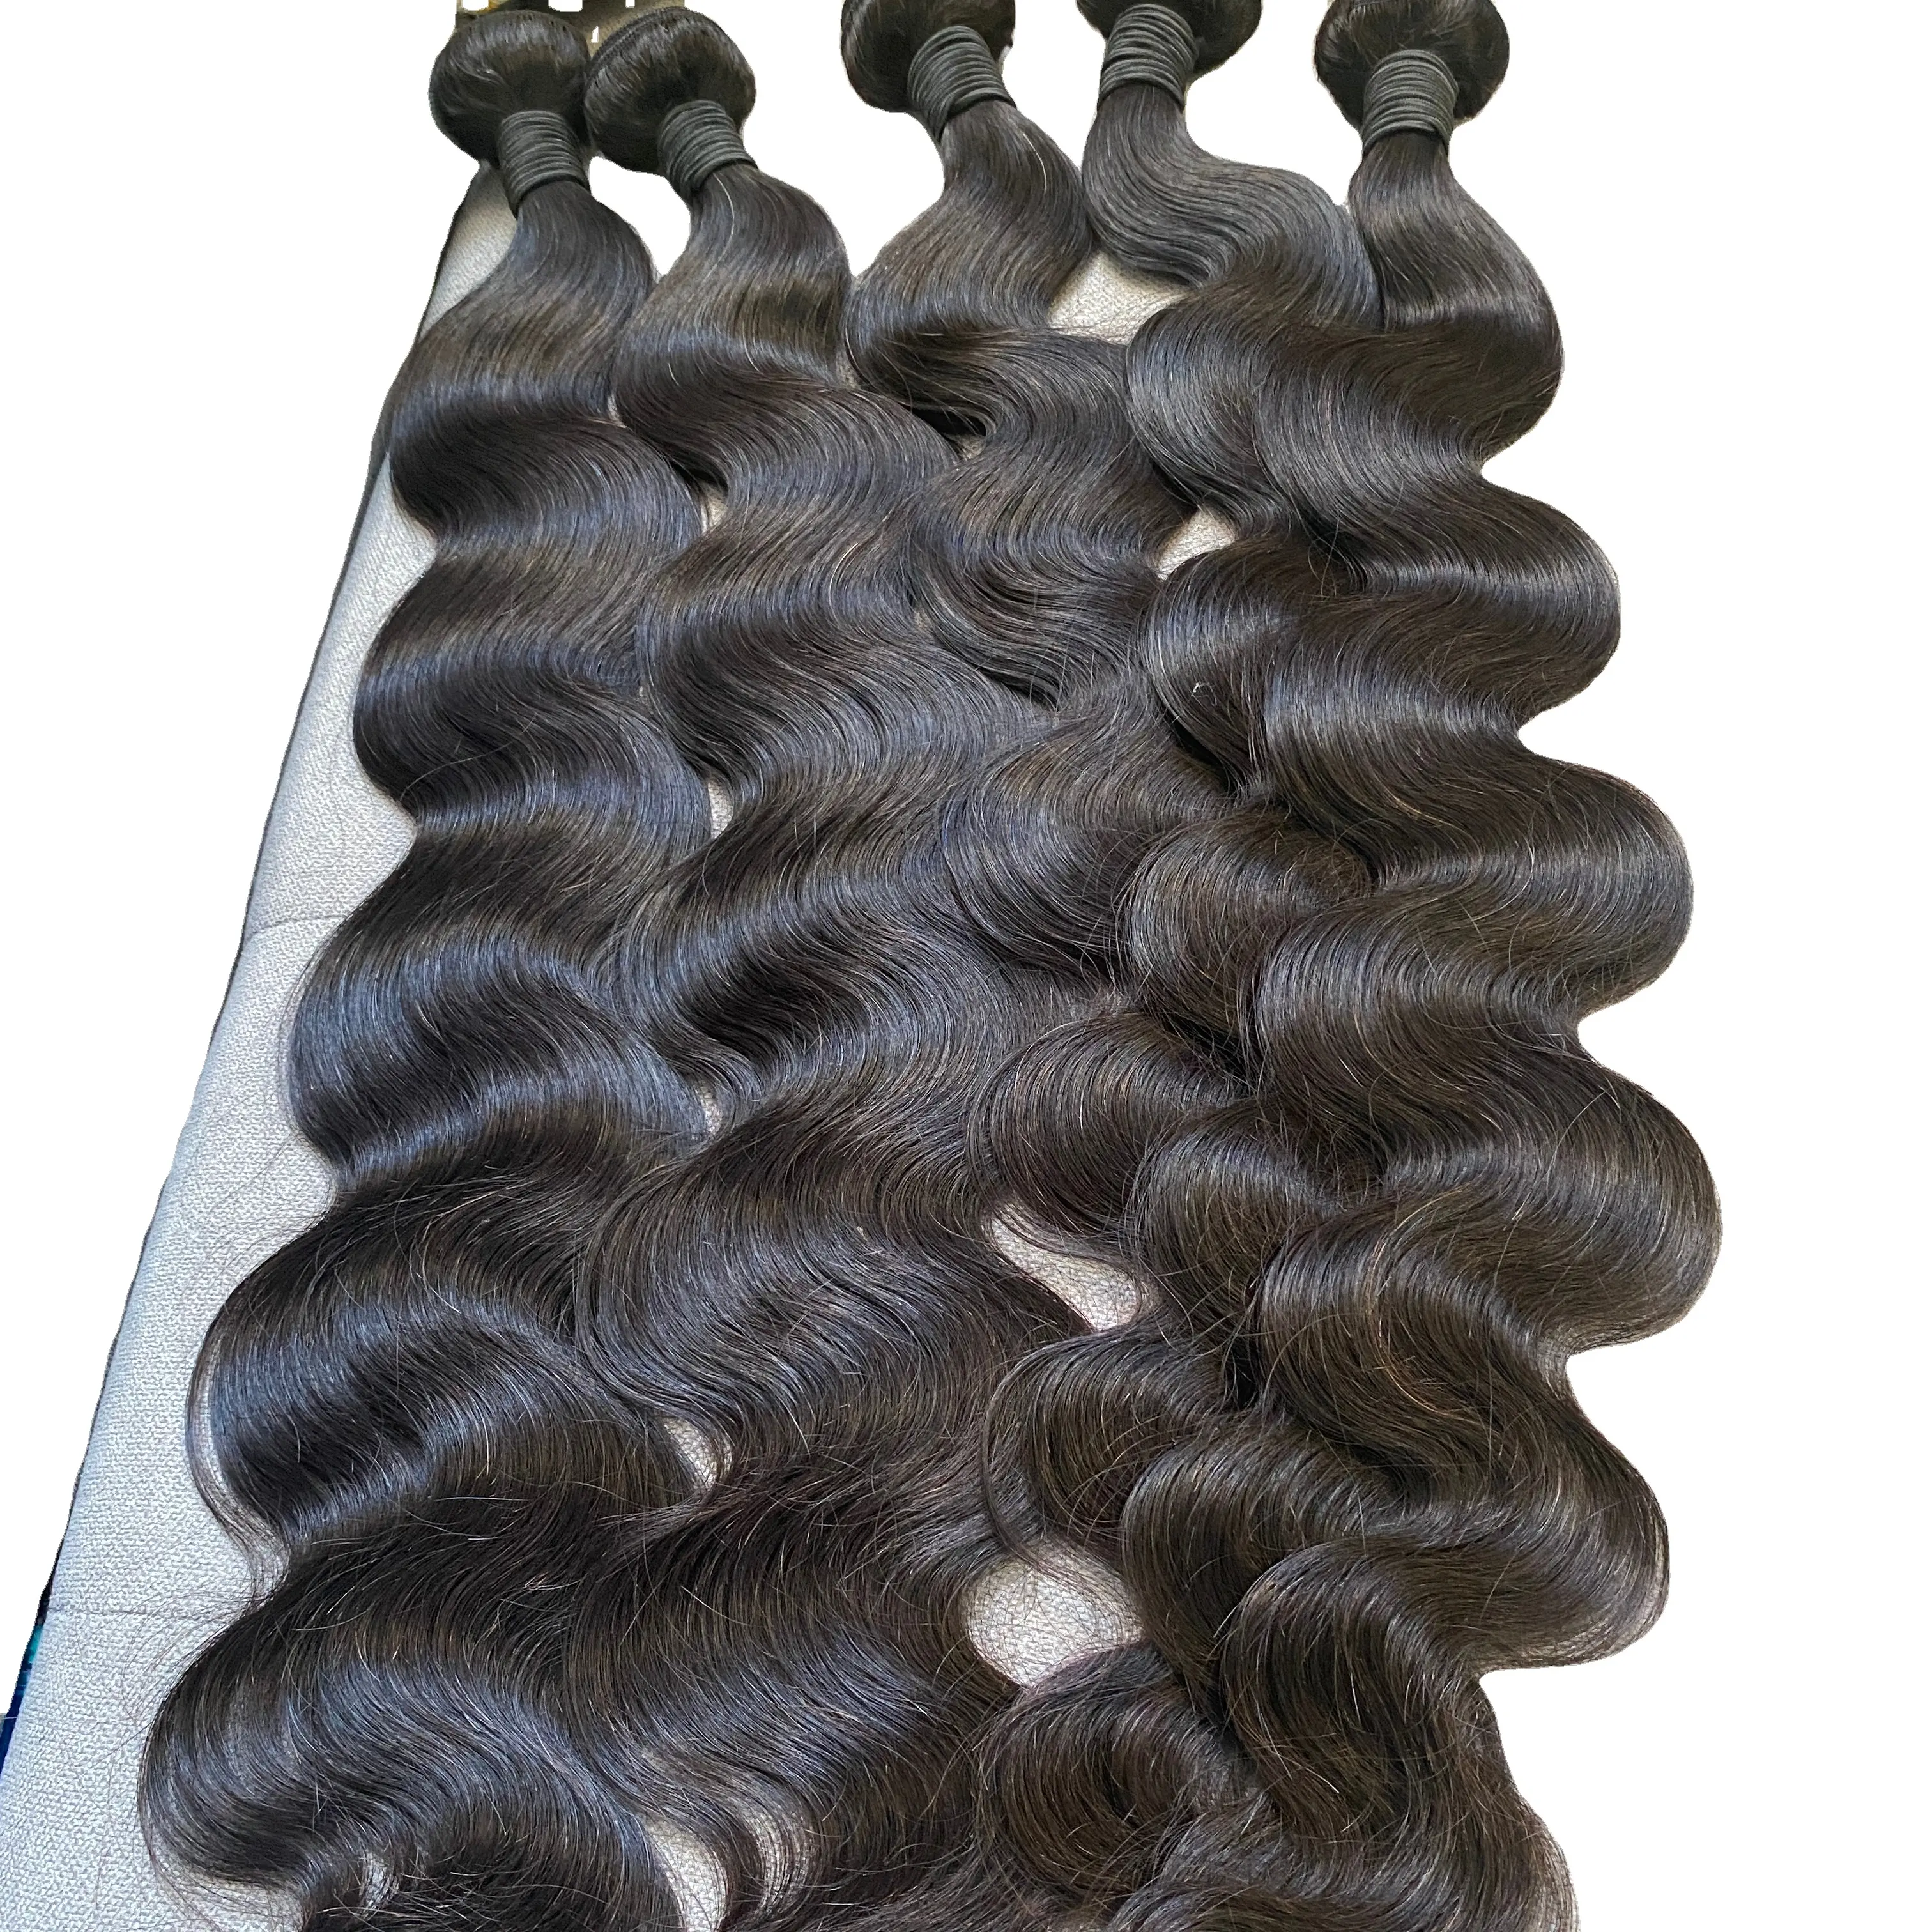 Methinkshair peruvian hair hair venditore di capelli crespi ricci fasci di visone di alta qualità in magazzino